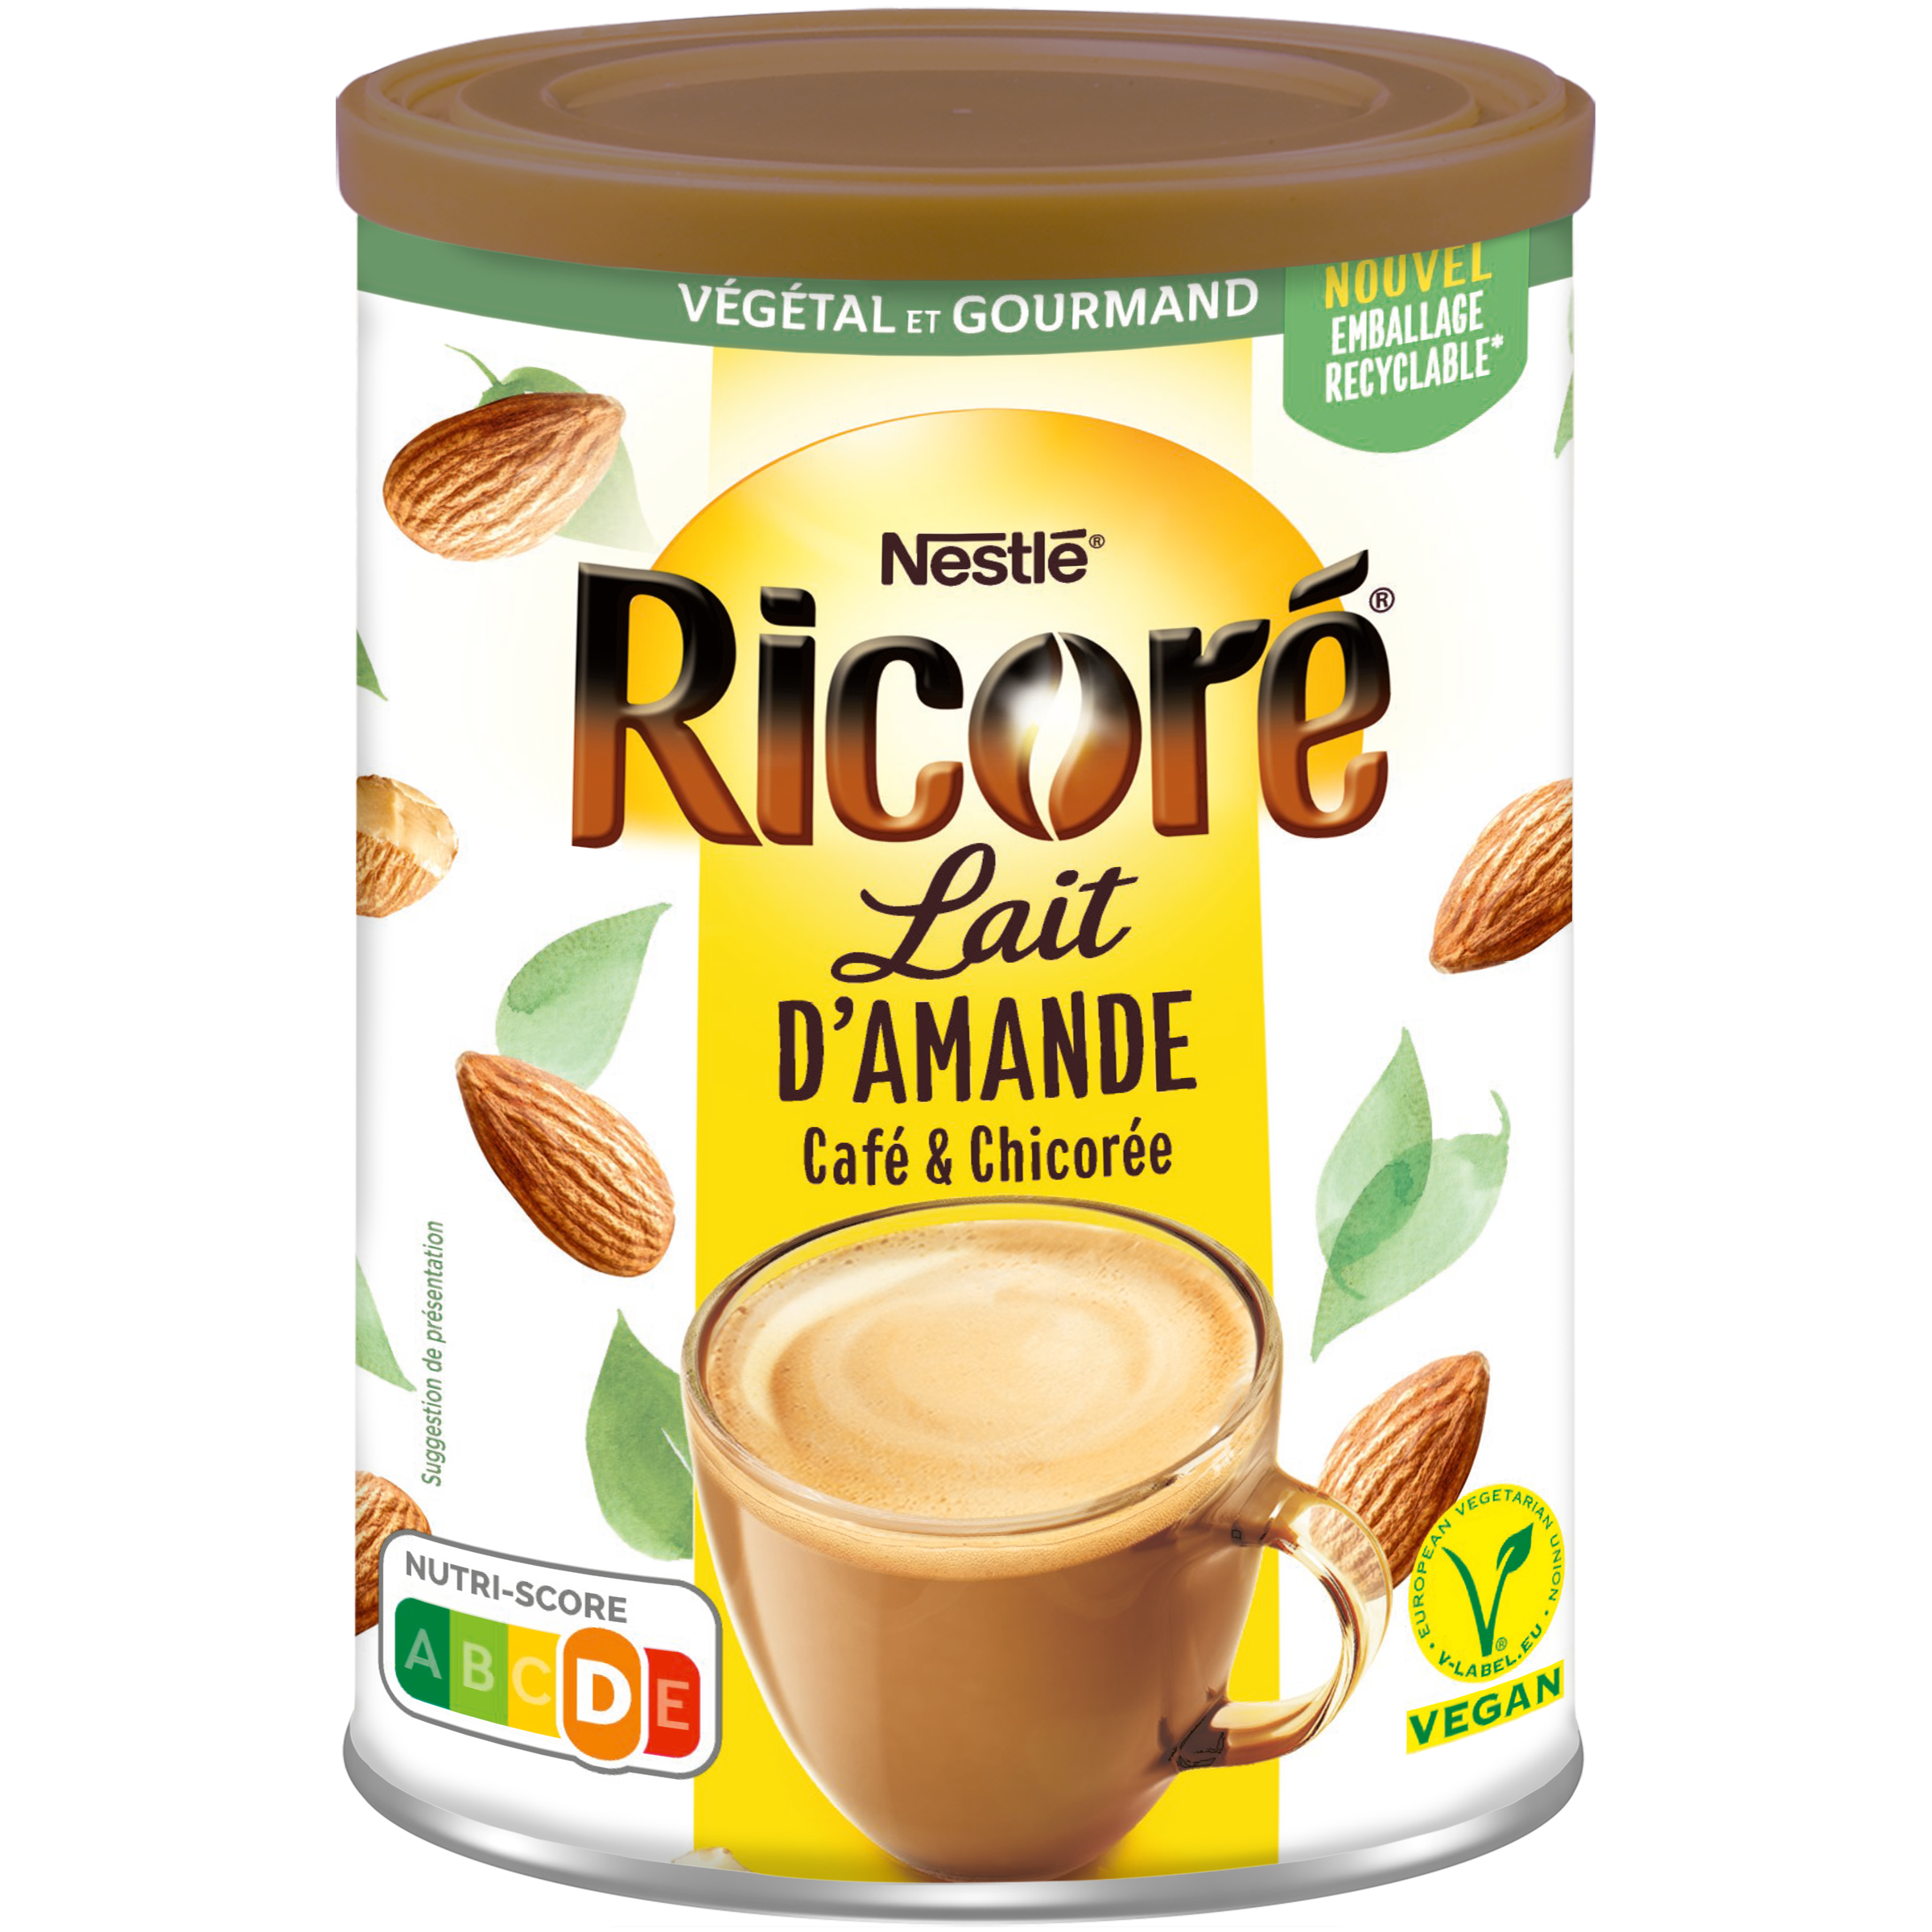 RICORE Lait d'Amande, Café & Chicorée, Boîte 190g